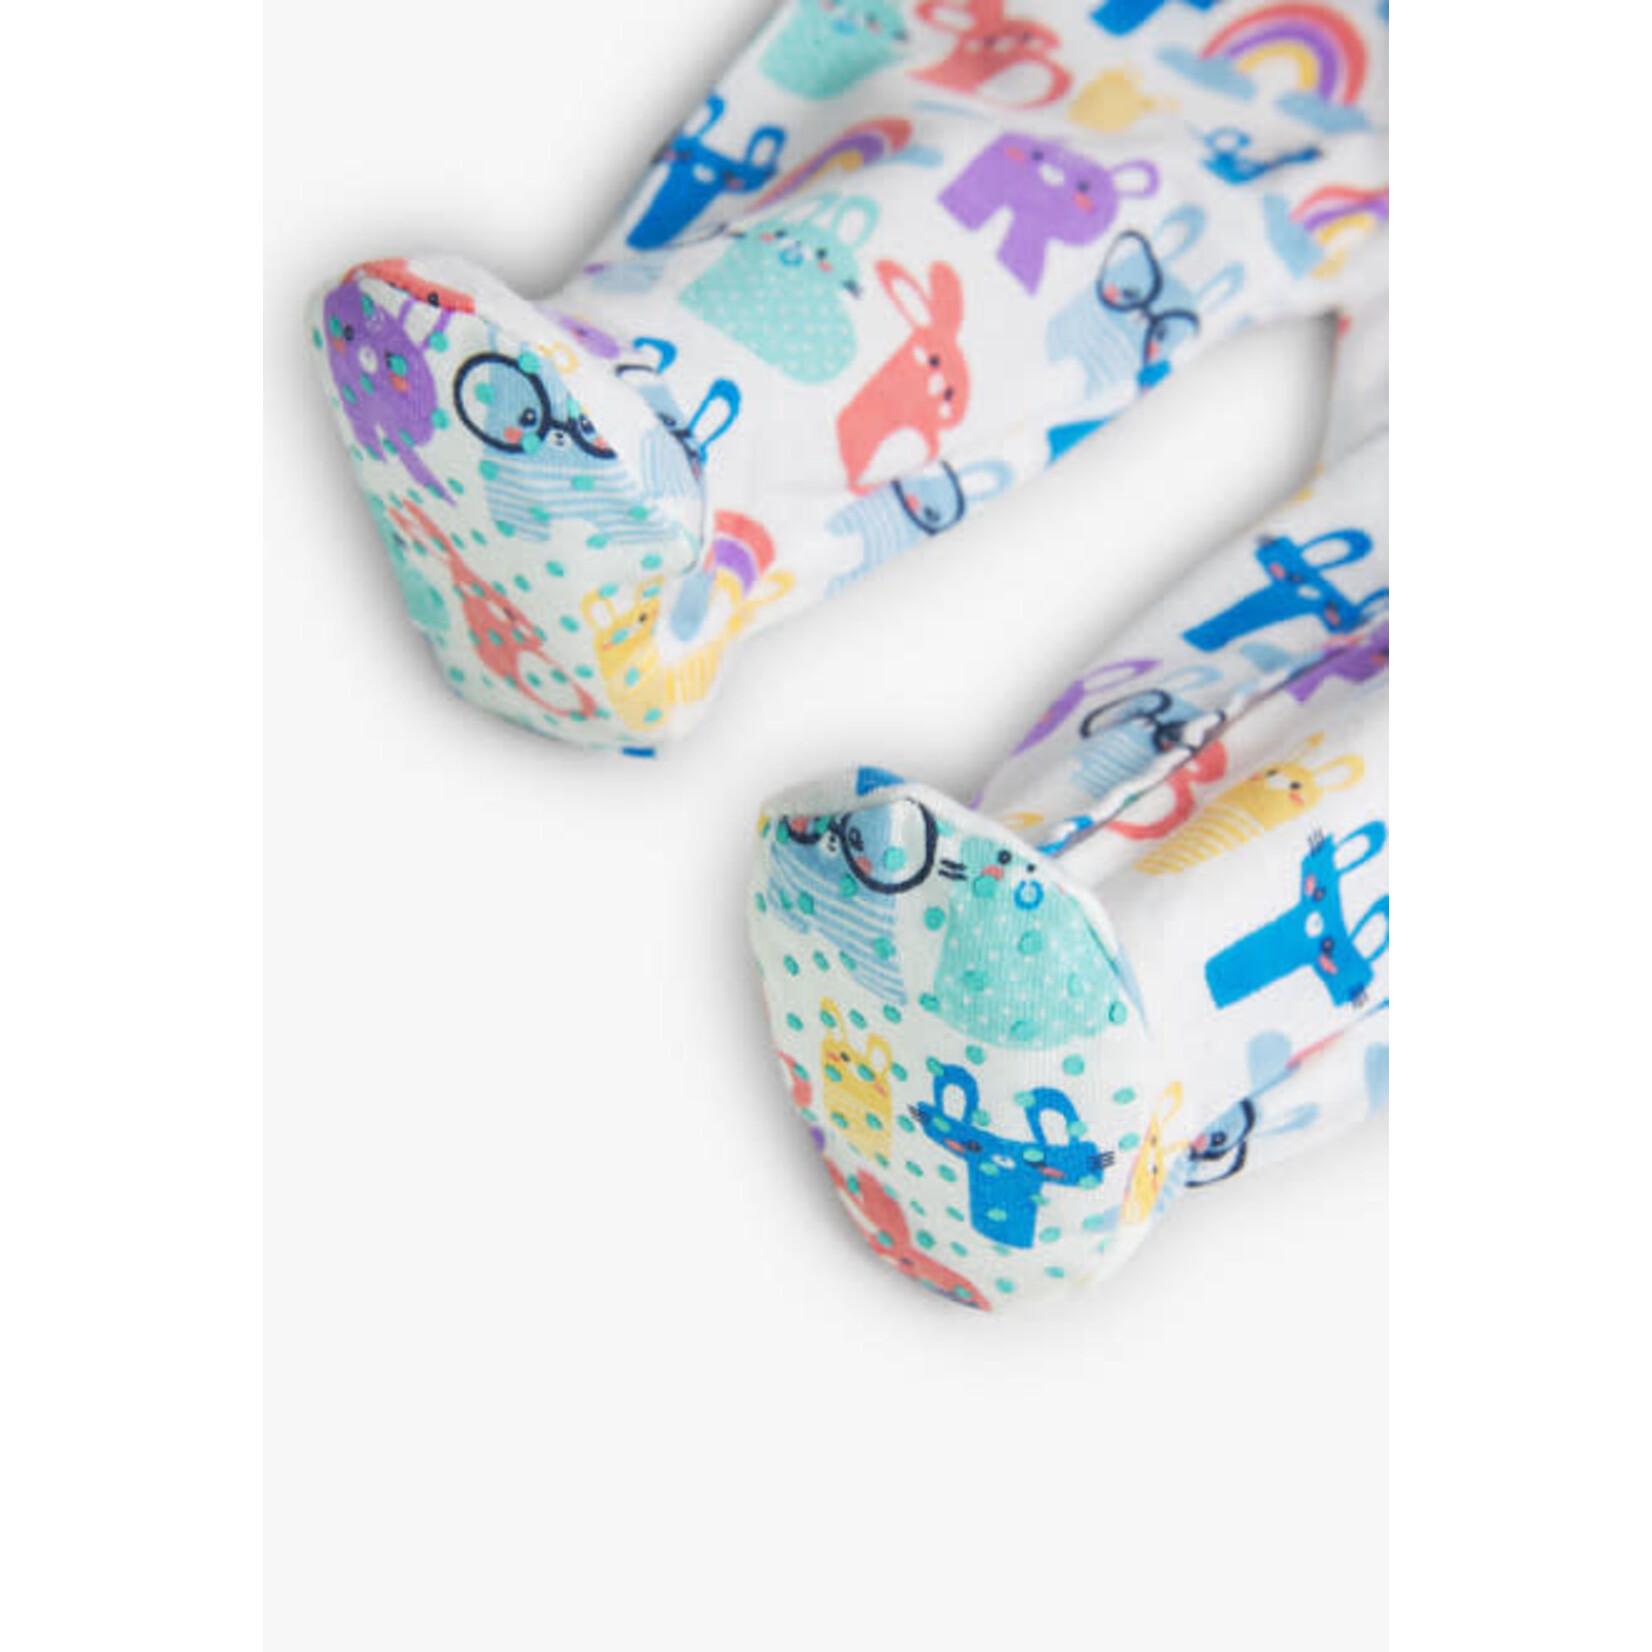 Boboli BOBOLI - White Footed Pyjamas with Multi-colored 'Alphabet Bunnies' Print